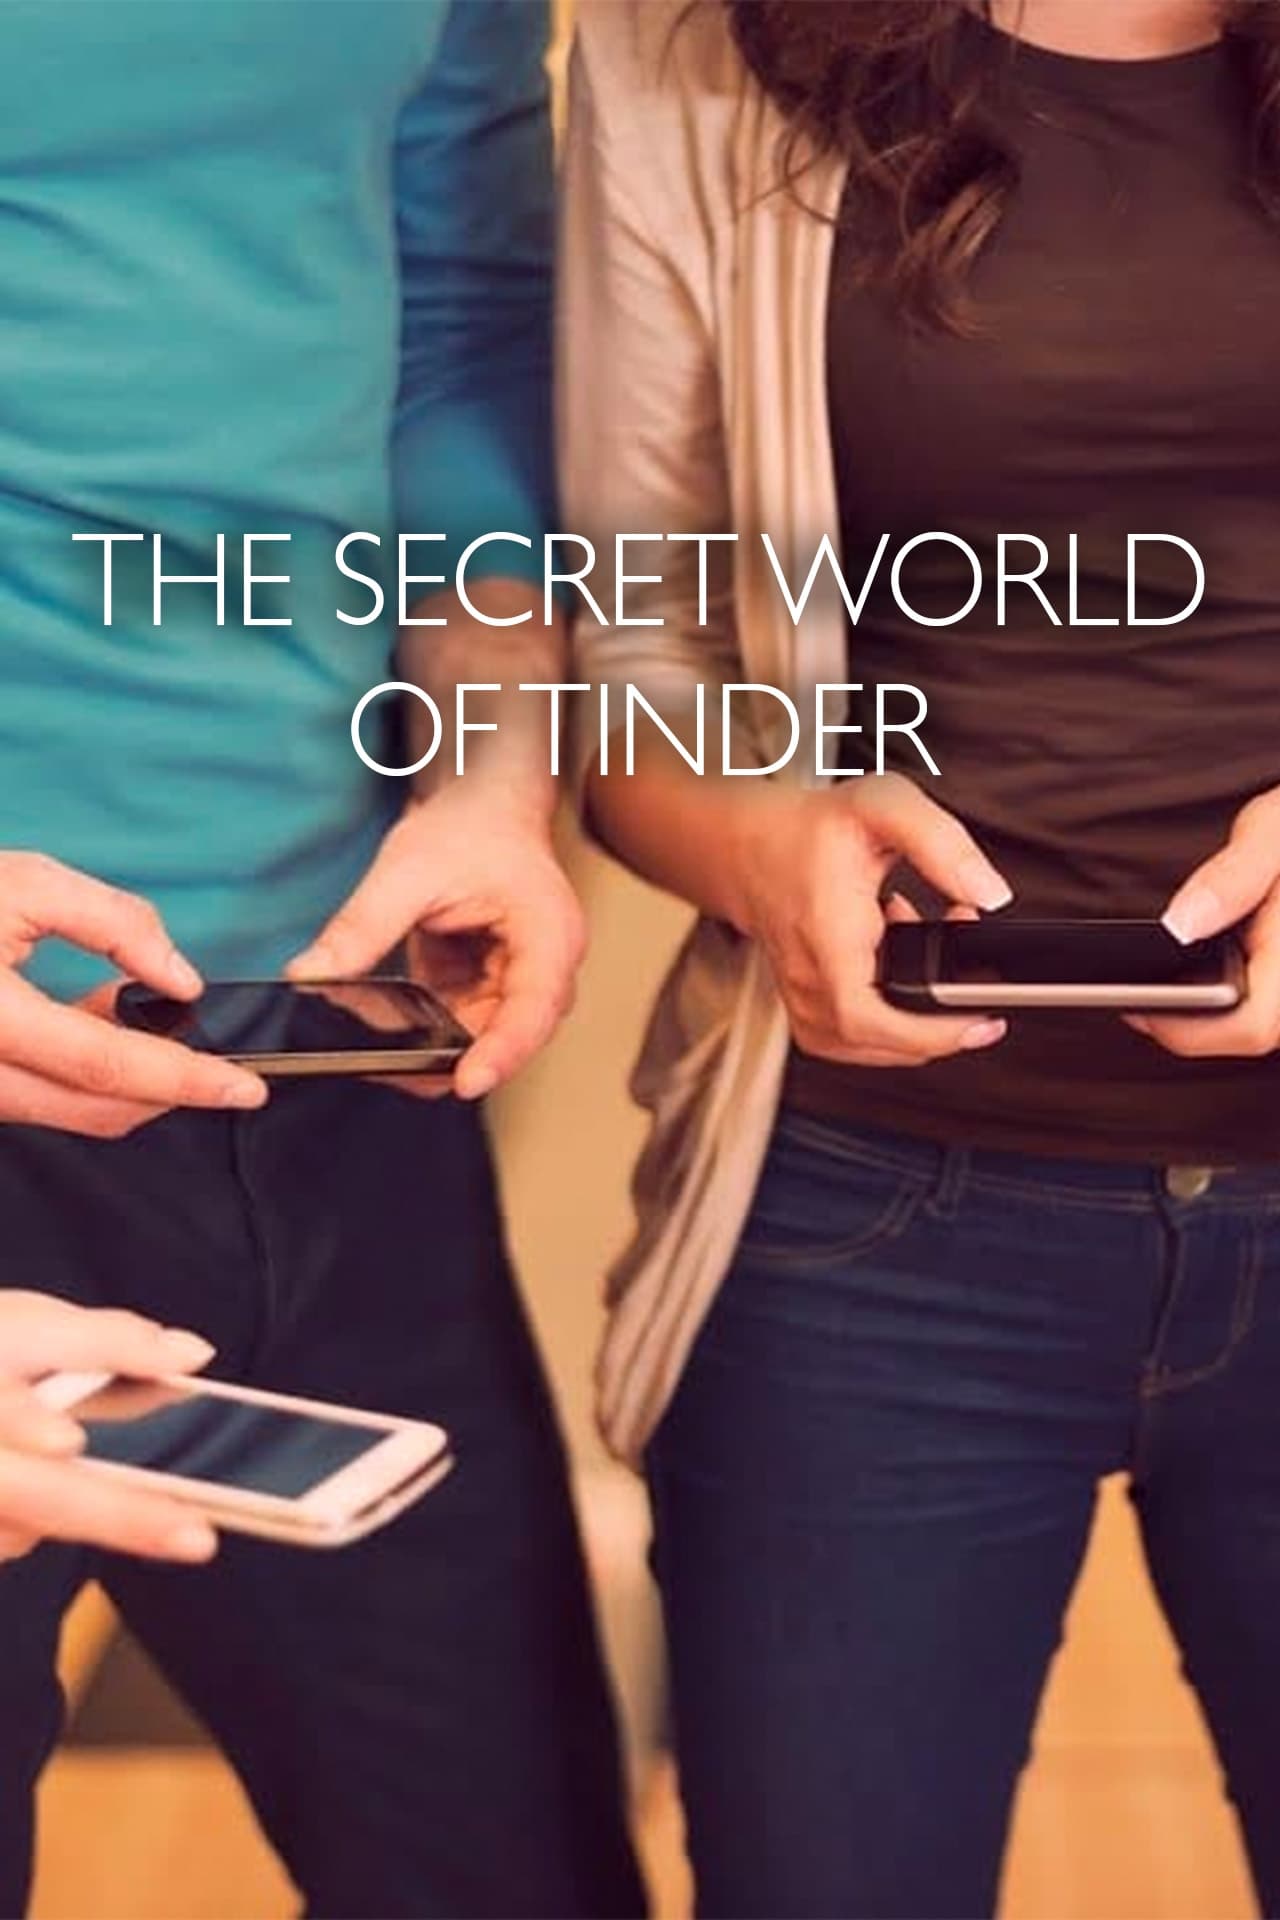 The Secret World of Tinder